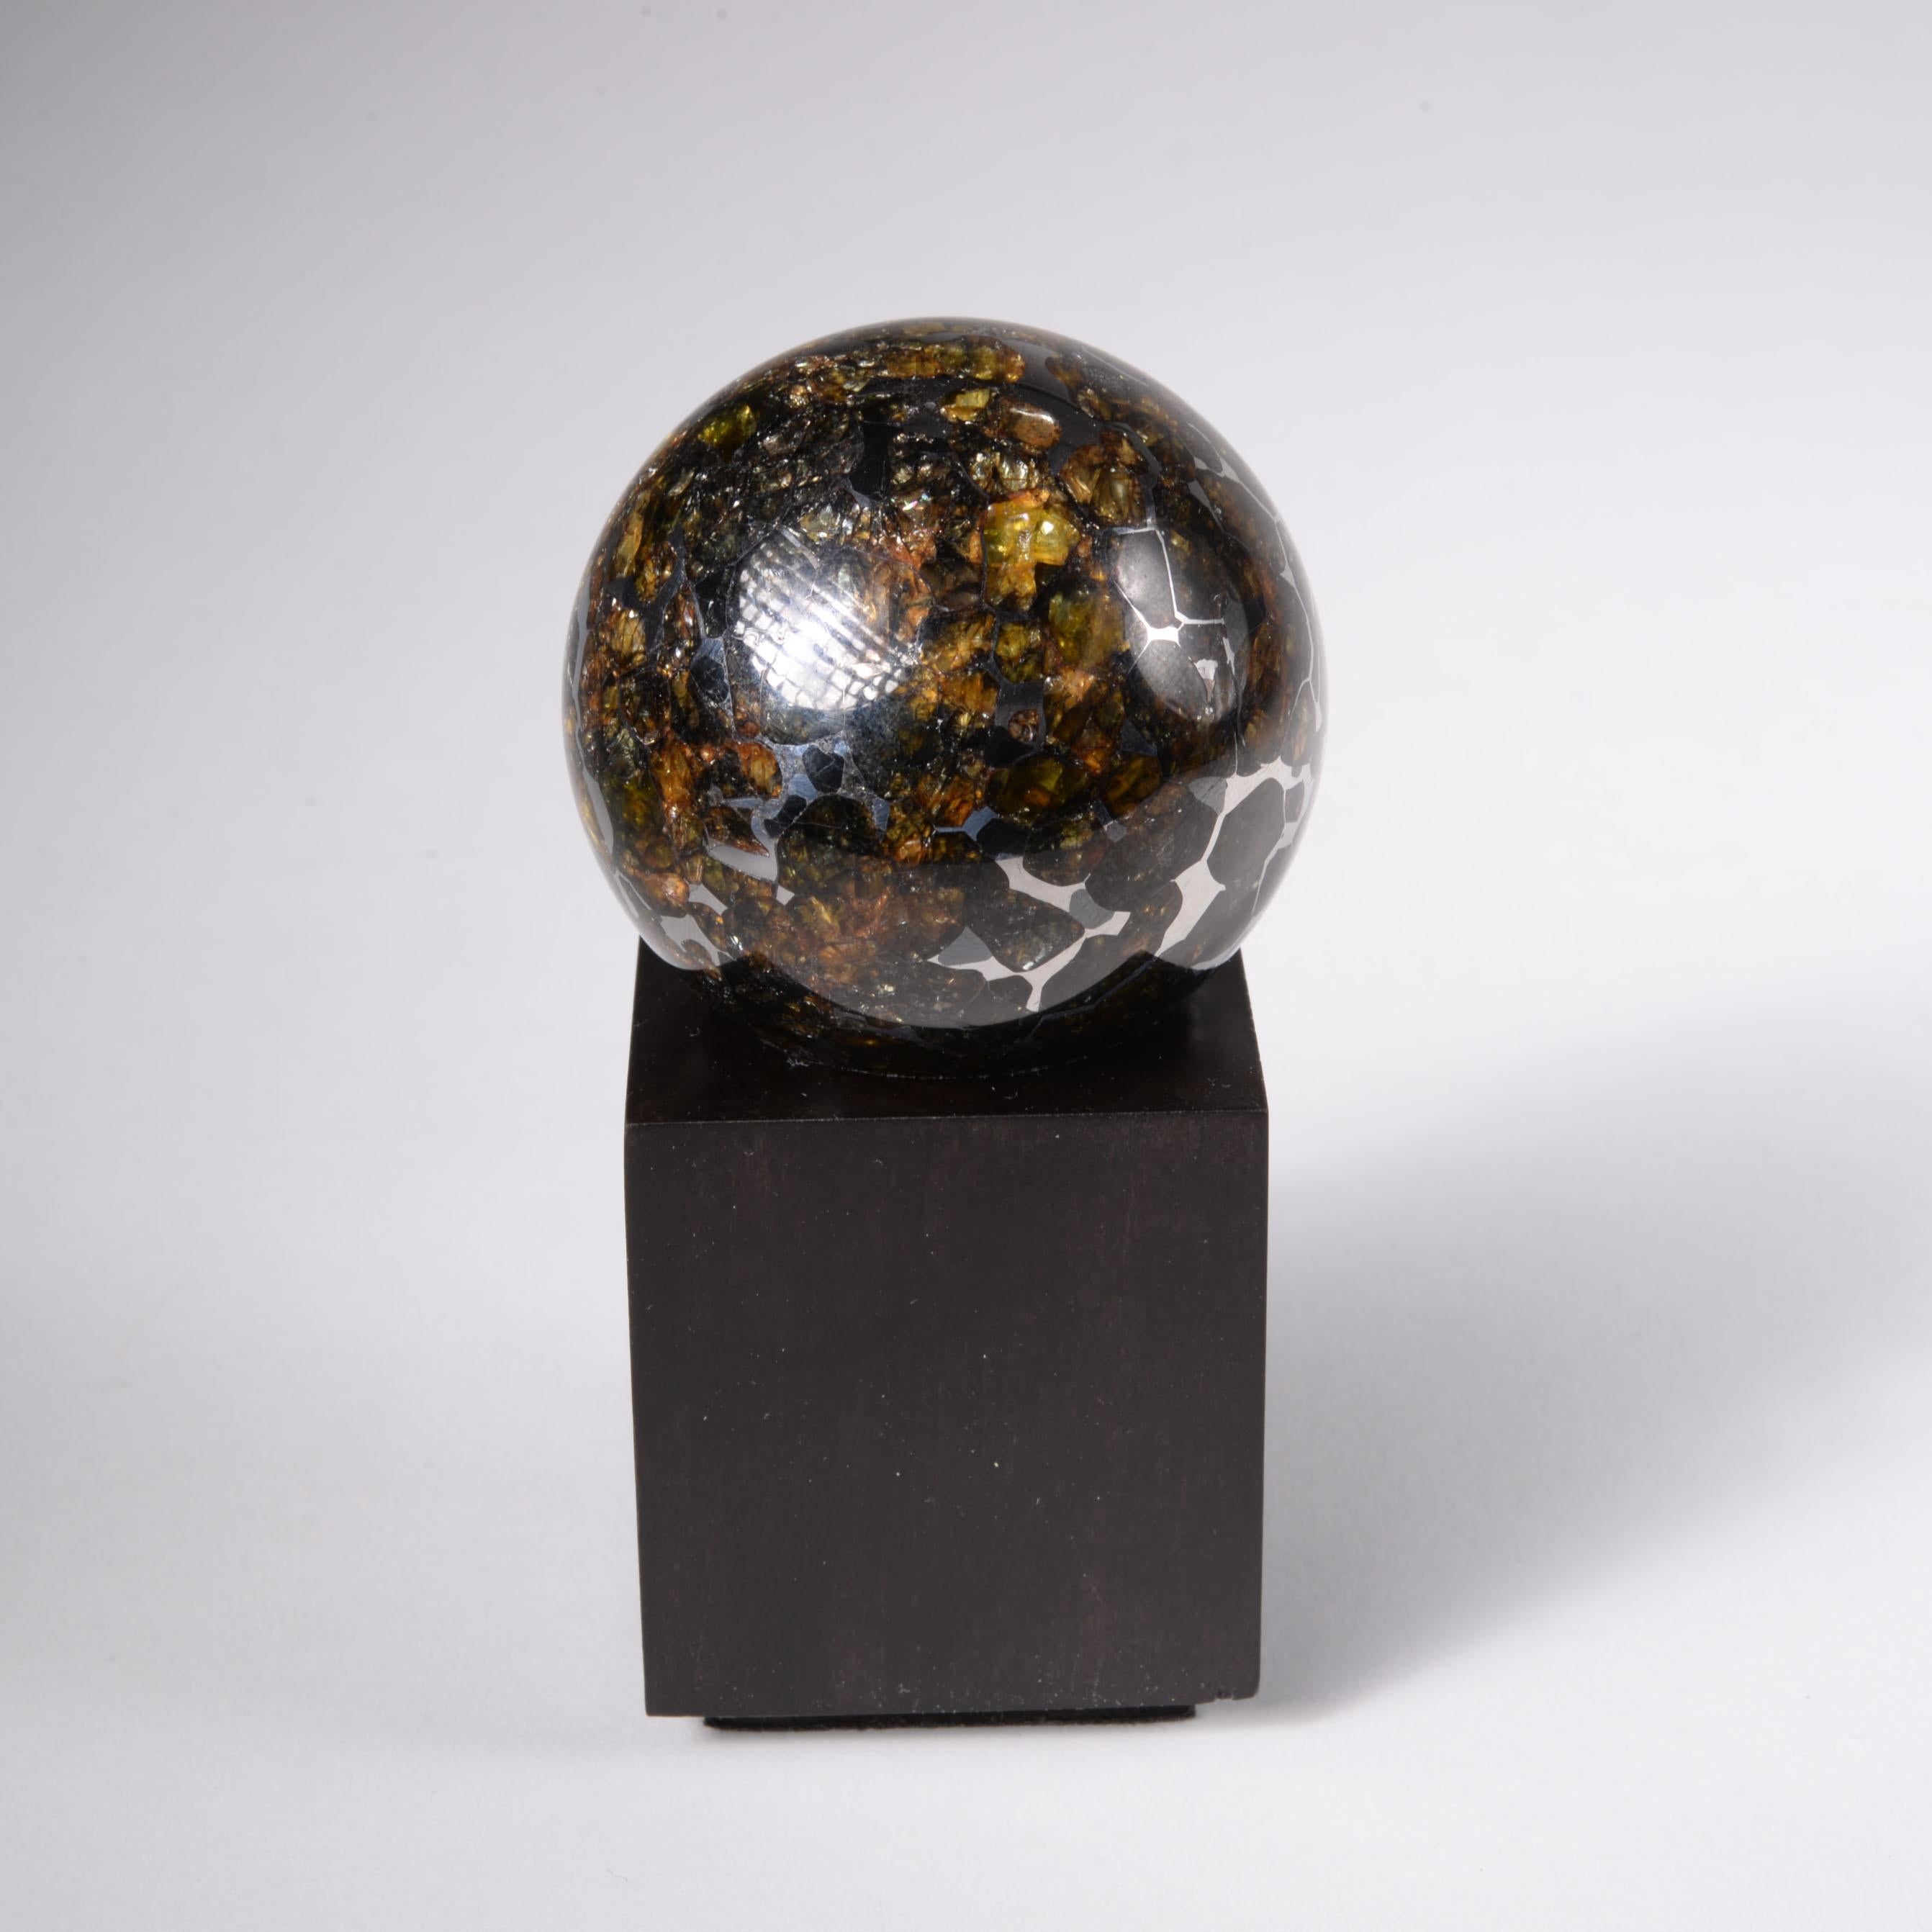 Sphère Seymchan
Pallasite
291 g 

Représentant moins de 0,2 % de l'ensemble des météorites, les pallasites, constituées d'une matrice de fer et de nickel entrelacée d'olivine de couleur ambre, sont les météorites les plus éblouissantes de